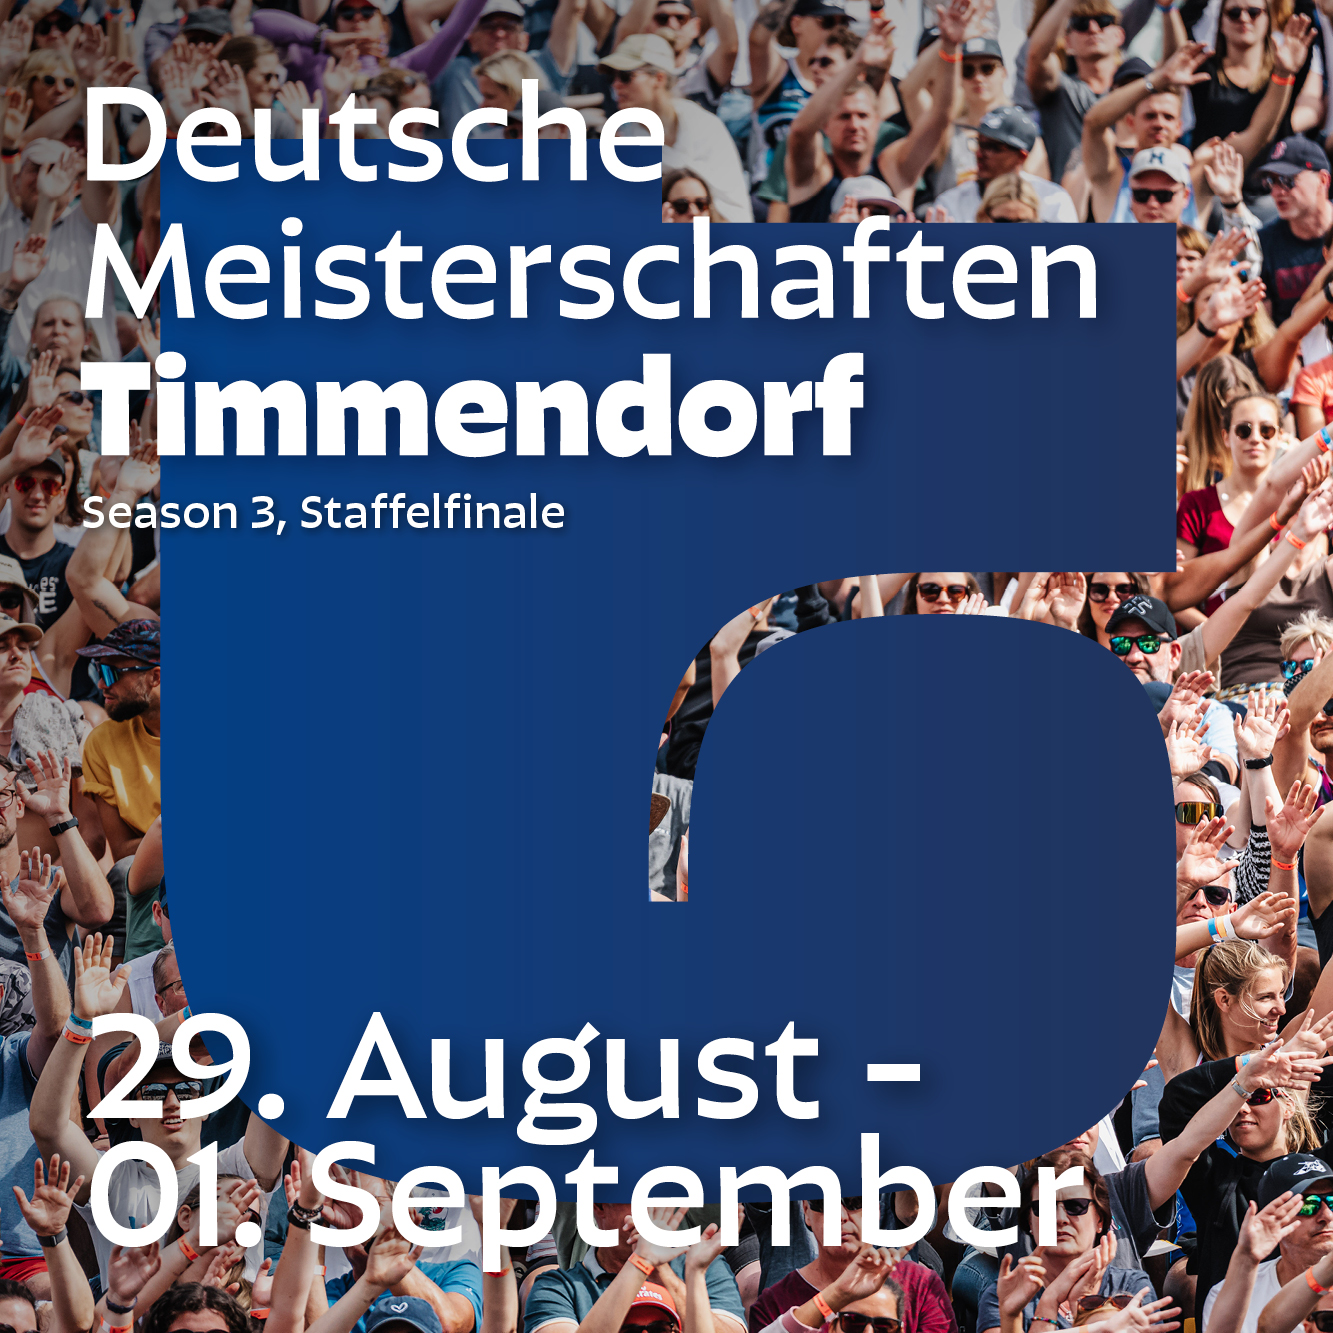 Tourfinale am Timmendorfer Strand vom 29. August bis 01. September